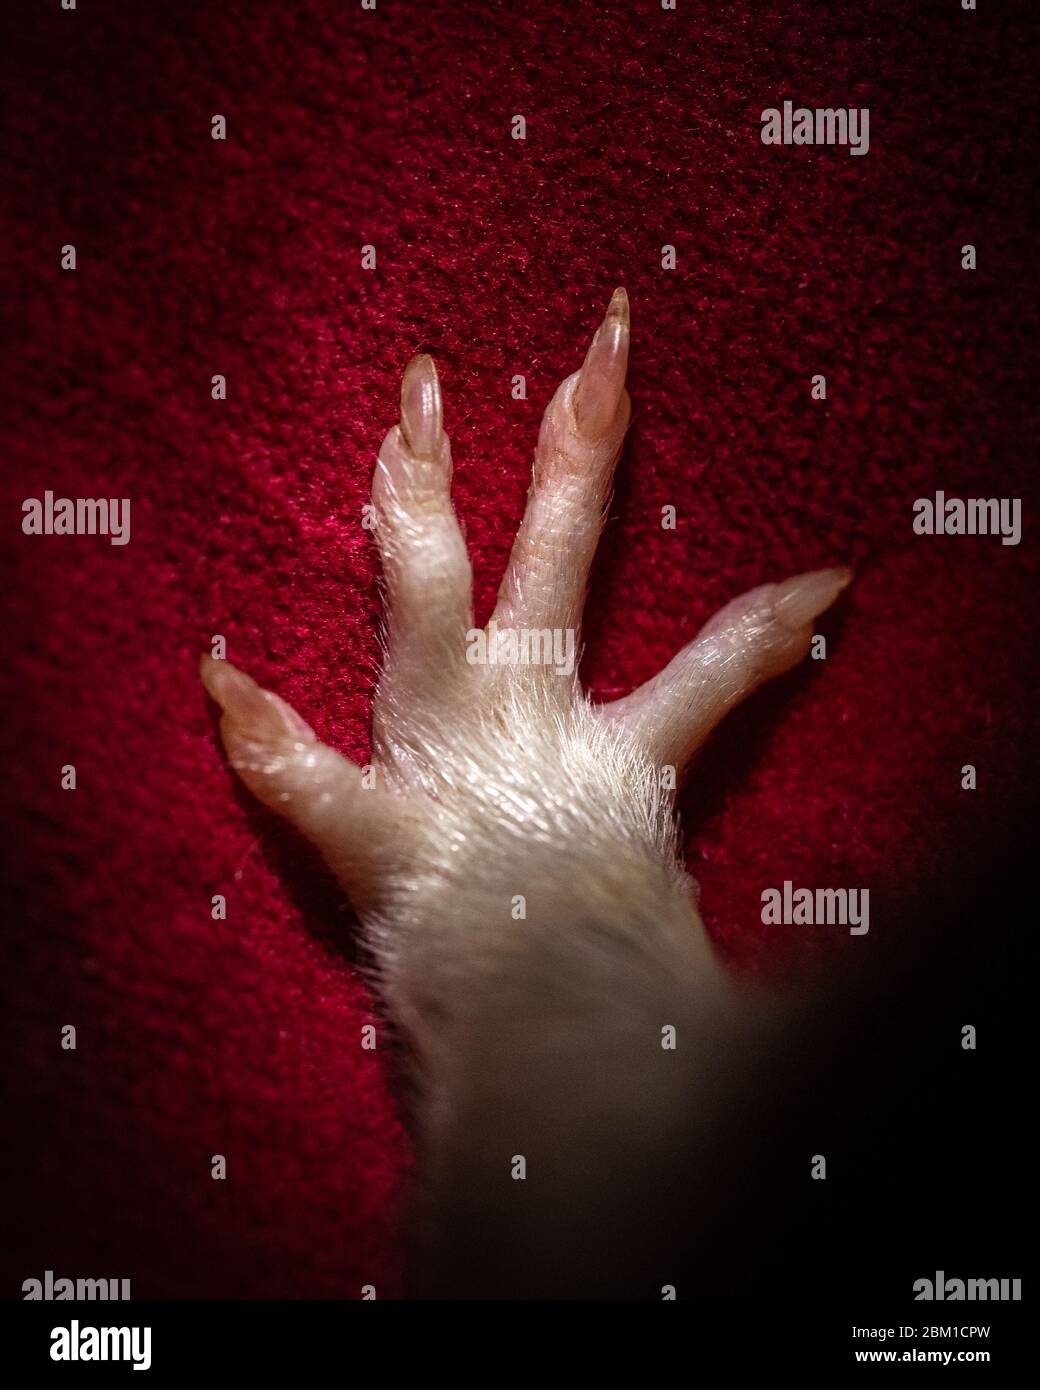 Una foto de cerca de un pie de ratas sobre un fondo de tela roja, mostrando los dedos abiertos salpicados, junto con uñas. Foto de stock